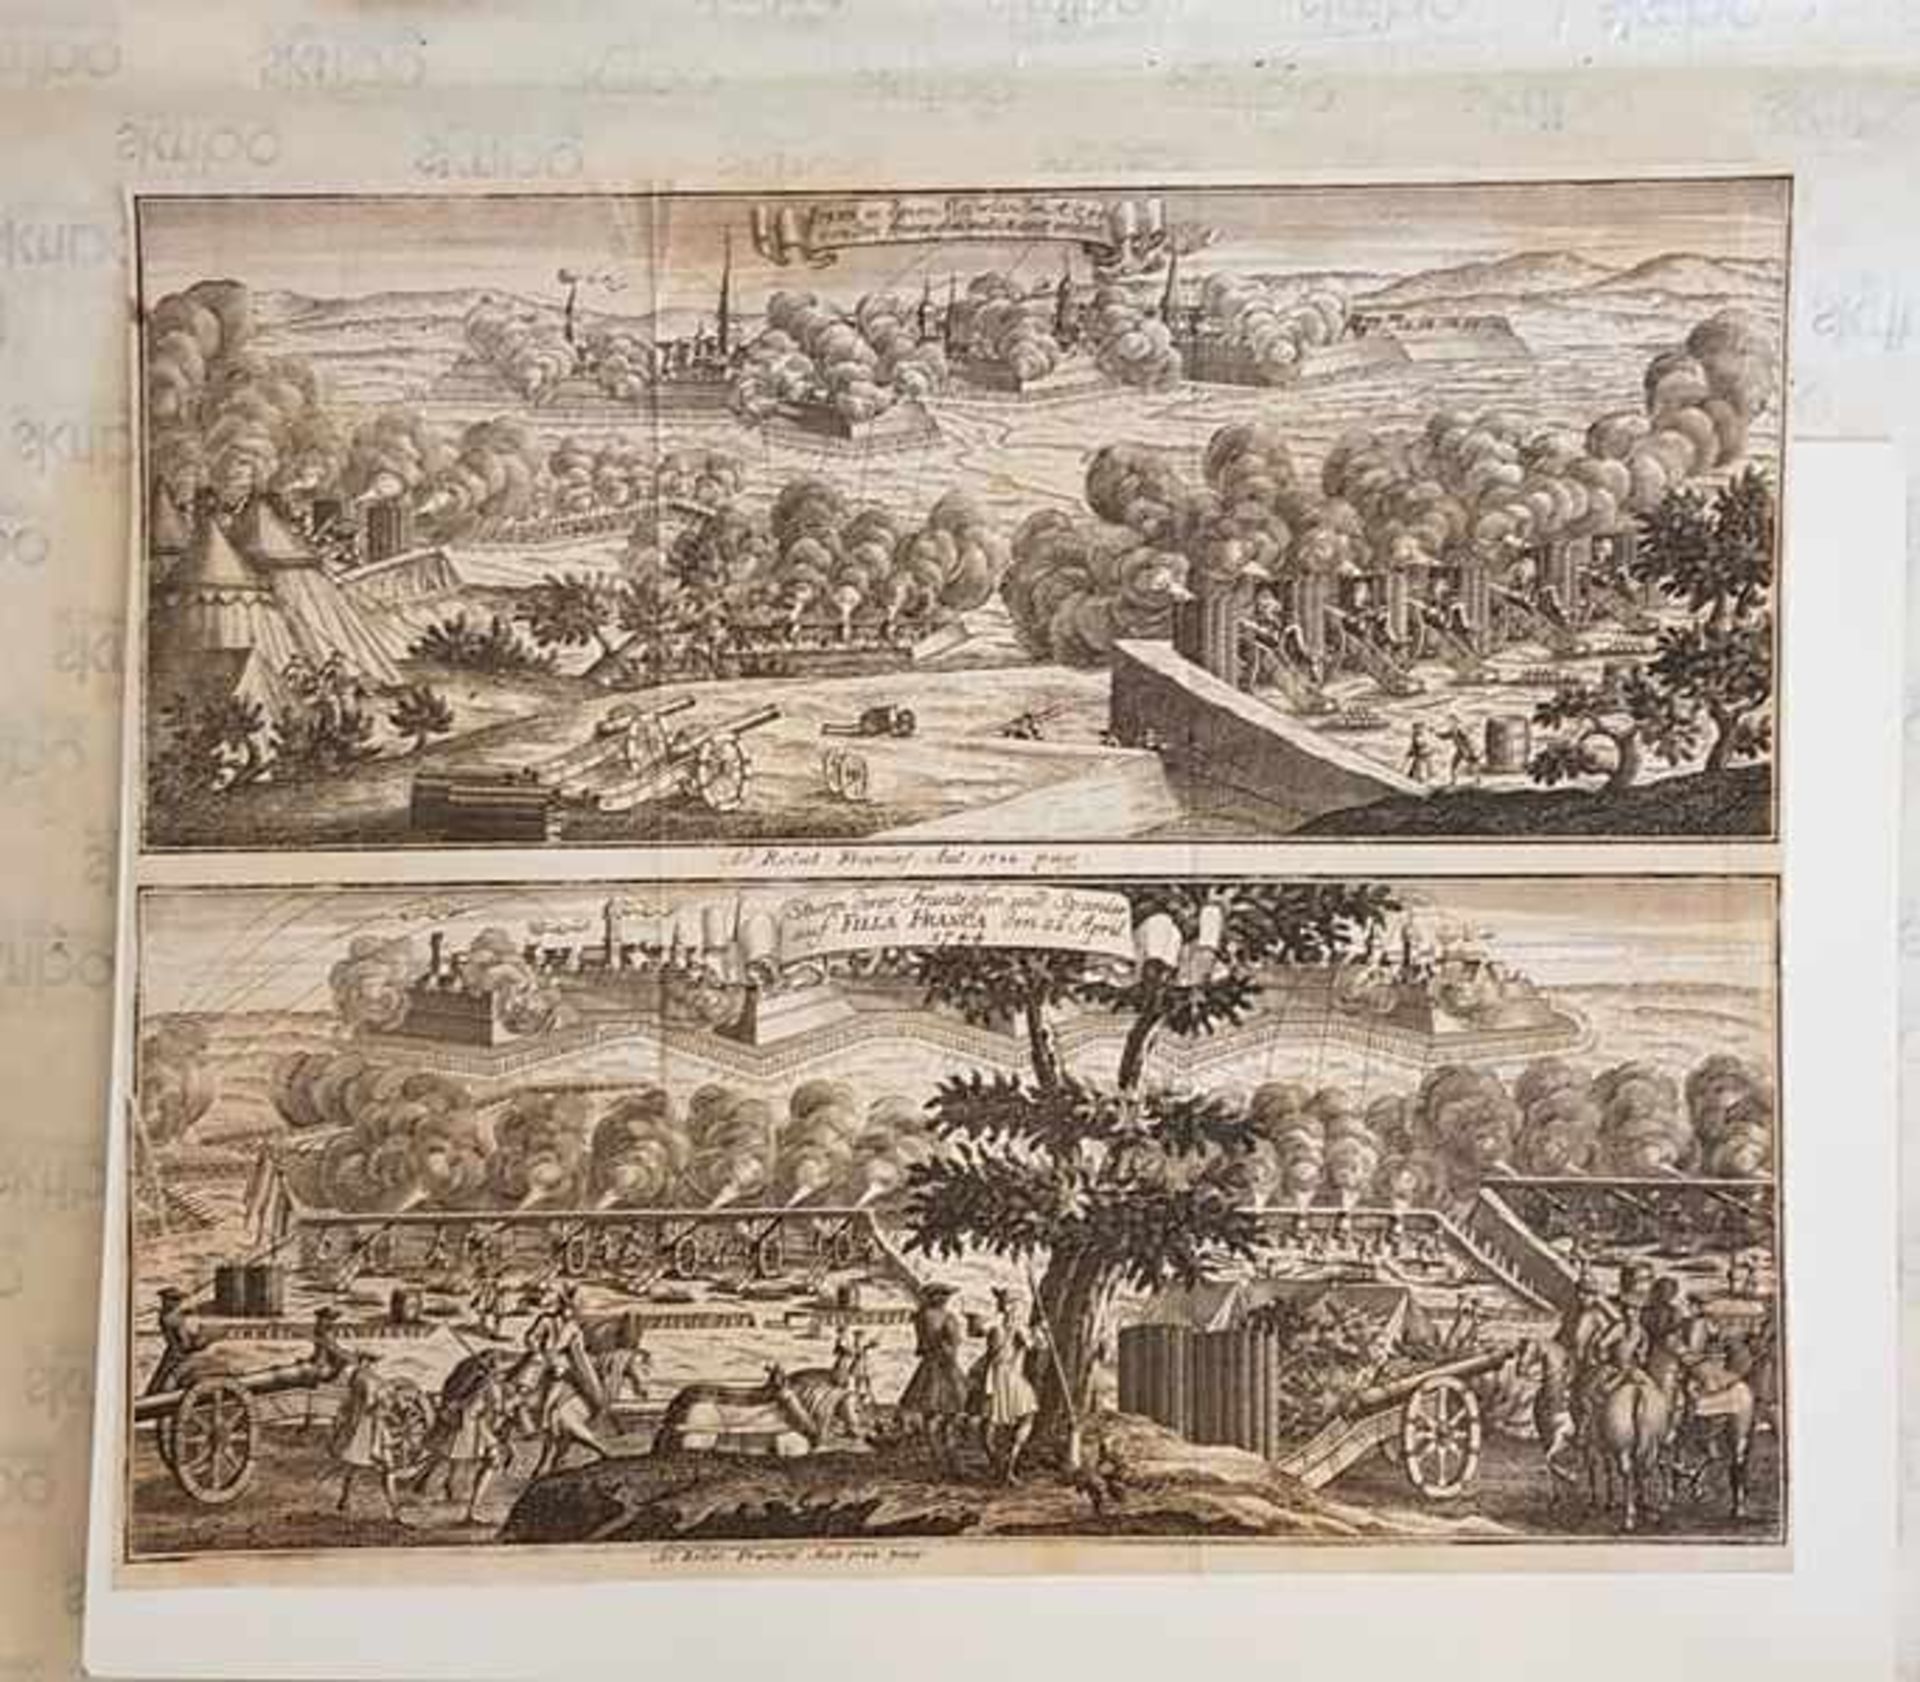 Ipern 1744 und Filla Franca 1744, Ipern in den Niederlanden 1744 von den Franzosen mit Accort